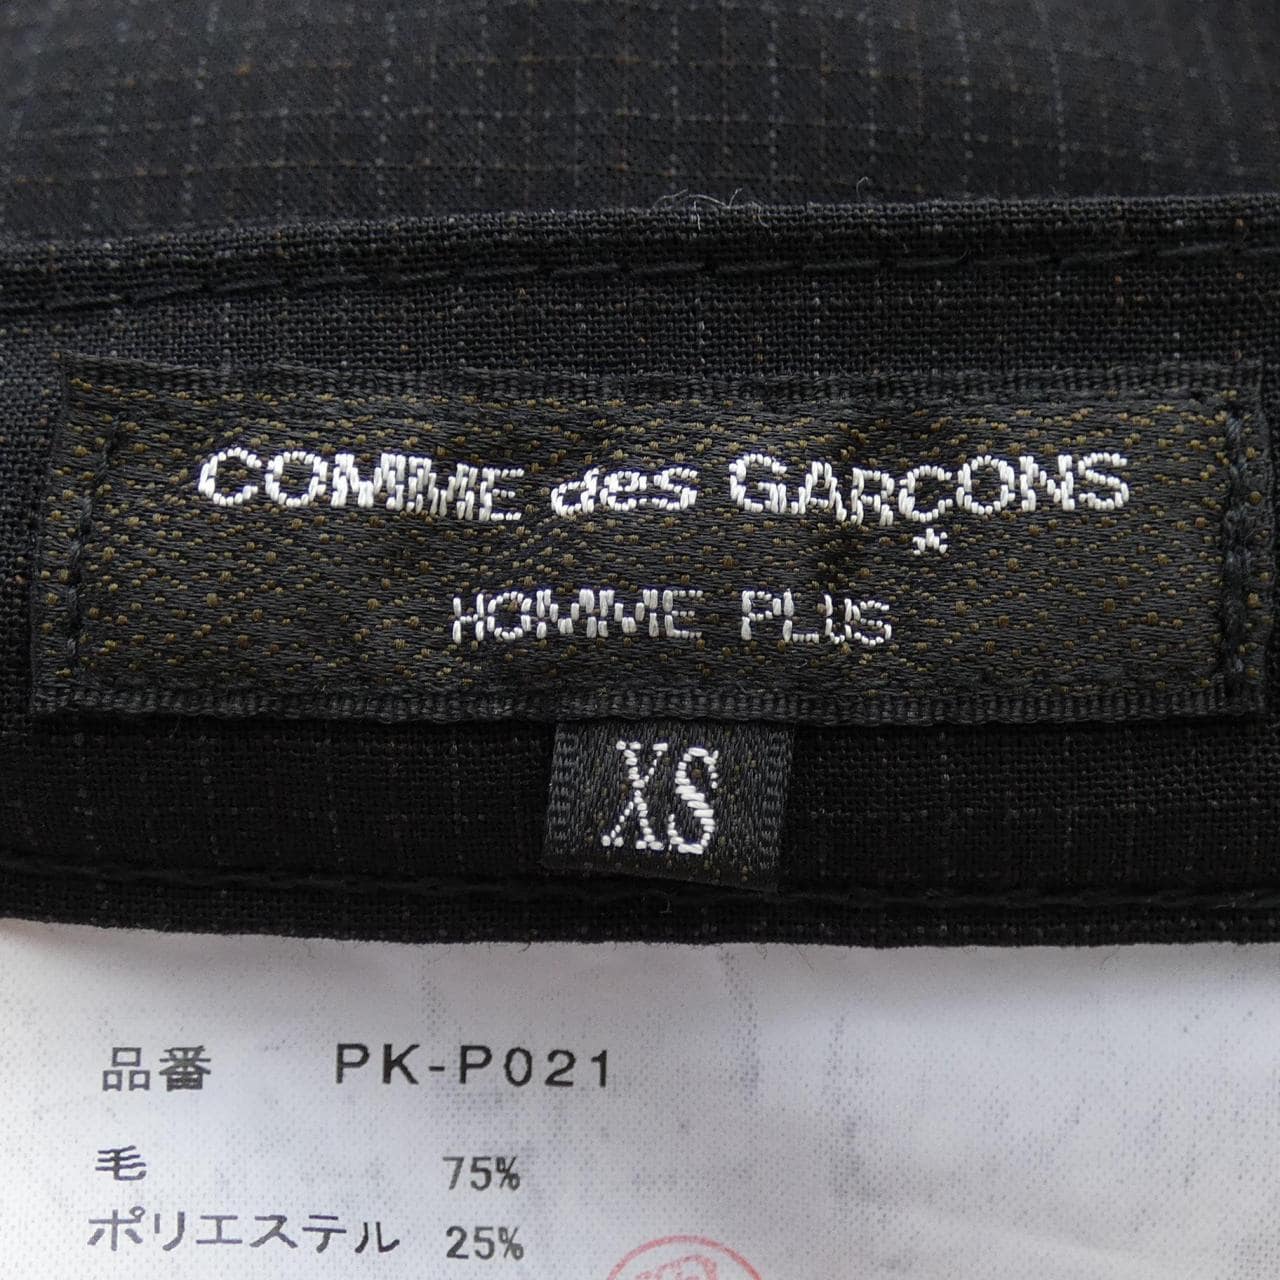 COMDEGARSONU PURUS GARCONS HOMME plus褲